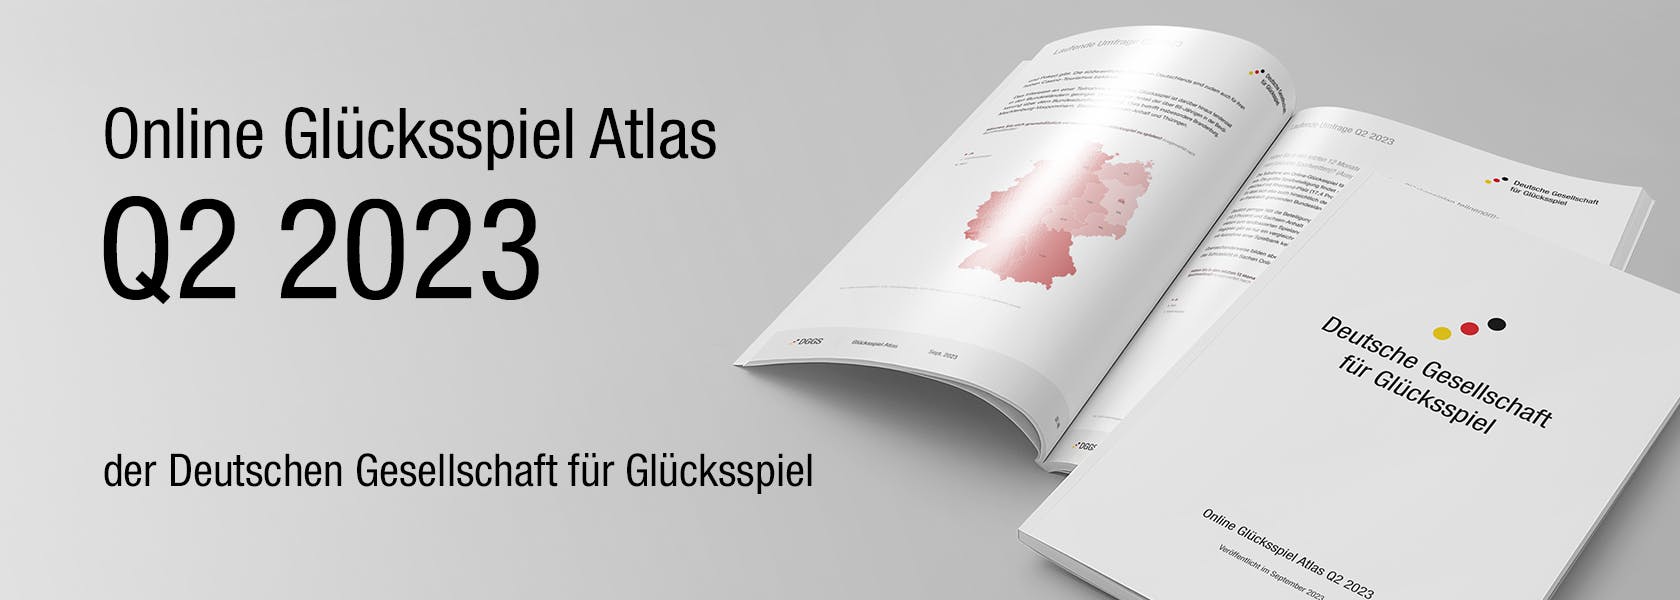 dggs-online-gluecksspiel-atlas-q2-2023-1680x600